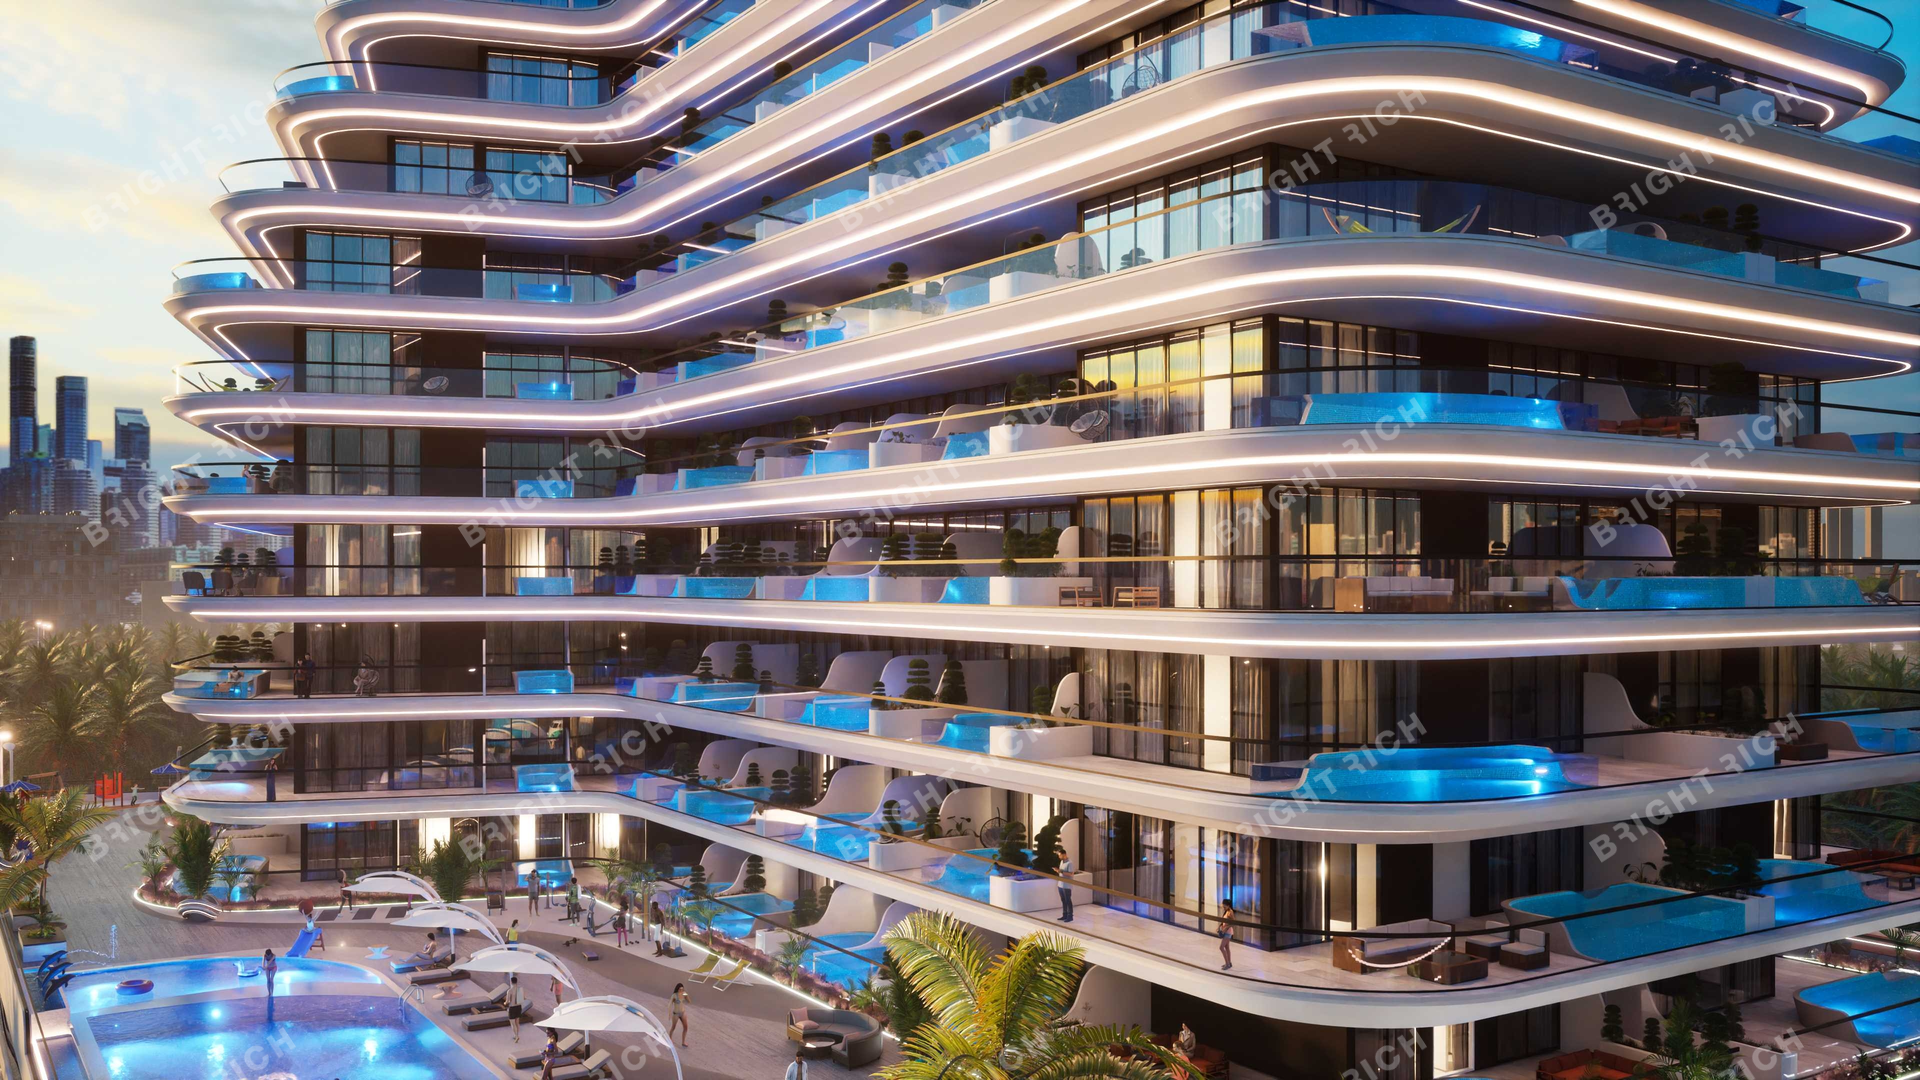 Samana Portofino, apart complex in Dubai - 41